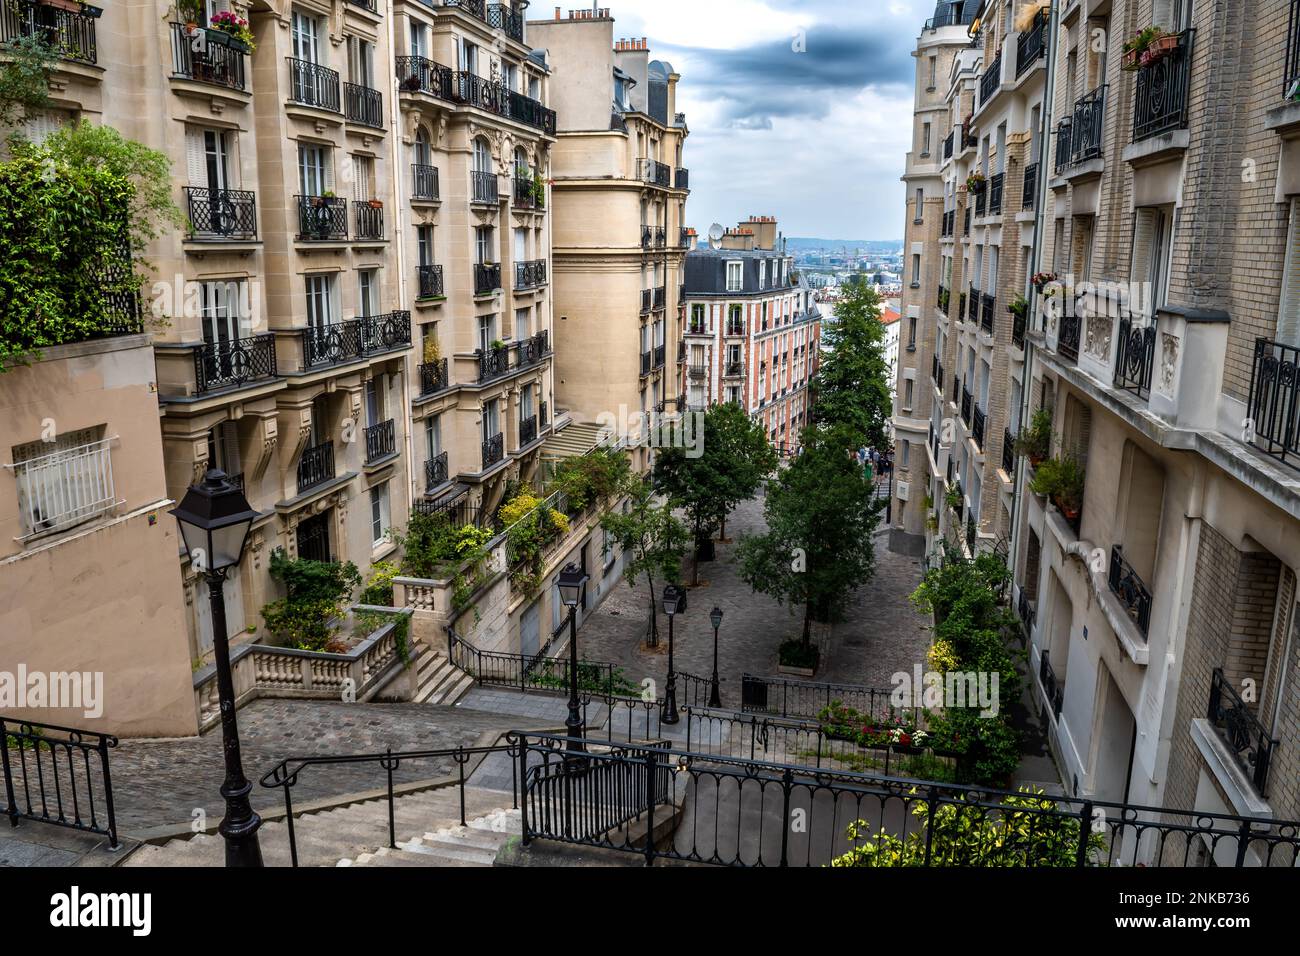 Allée étroite avec bâtiments anciens et escaliers à Montmartre Hill à Paris, France Banque D'Images